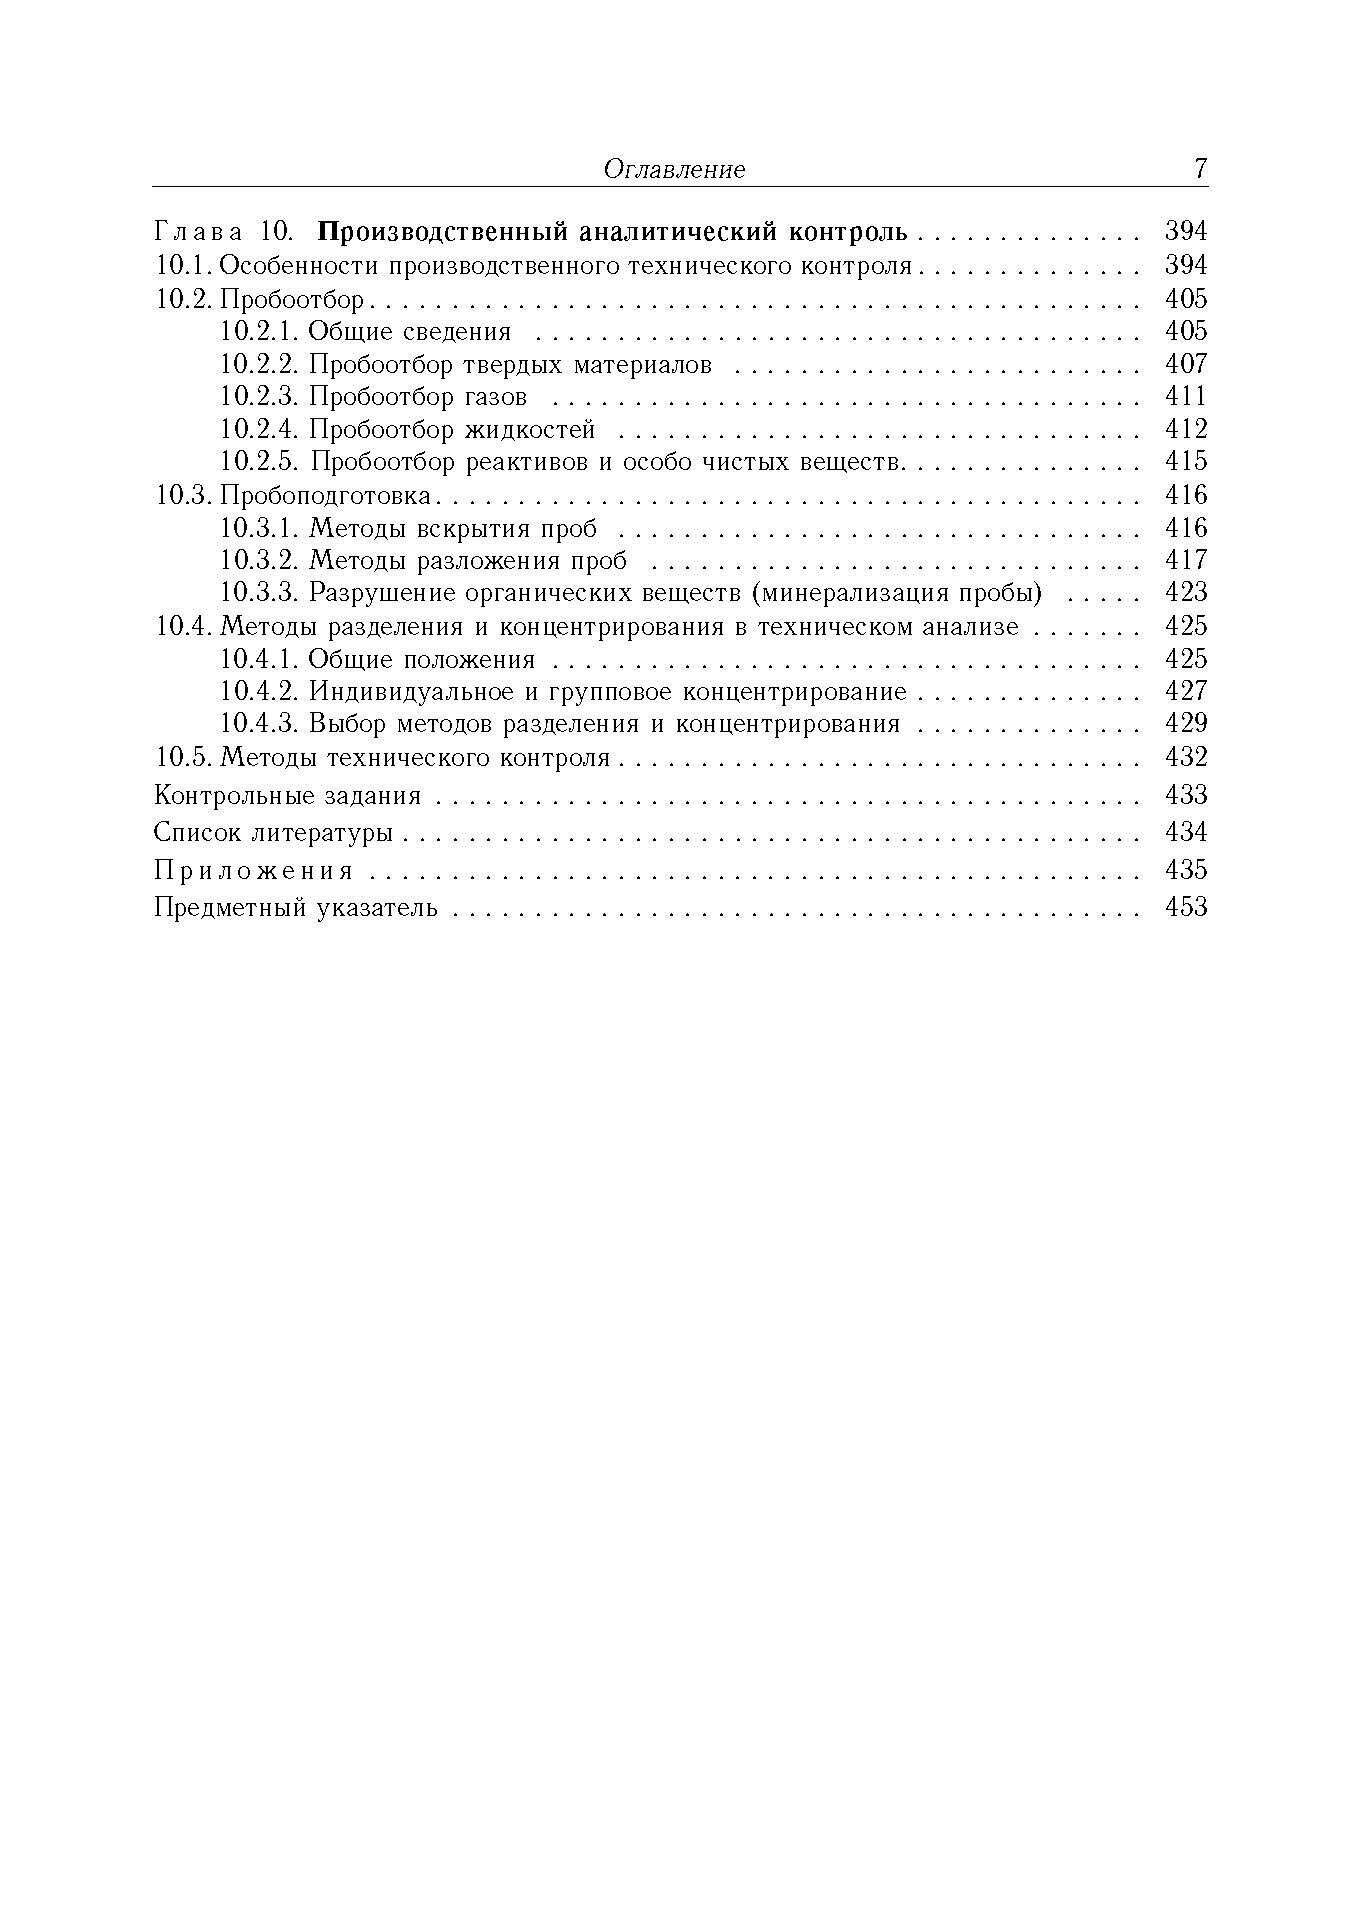 Аналитическая химия. В 3-х томах. Том 1. Химические методы анализа - фото №3